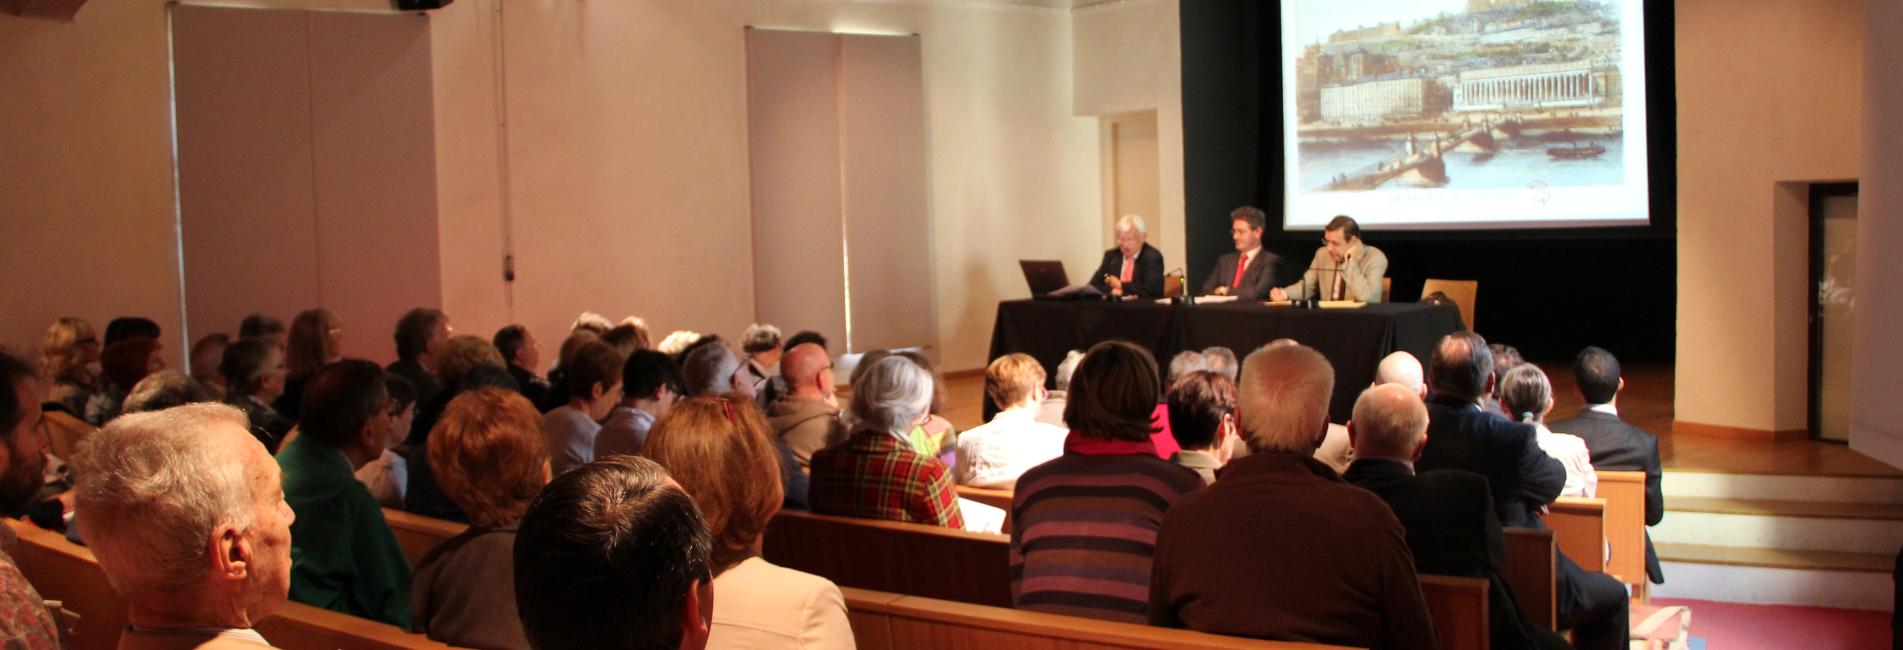 Conférence à l'auditorium de Gadagne © Gadagne, 2012